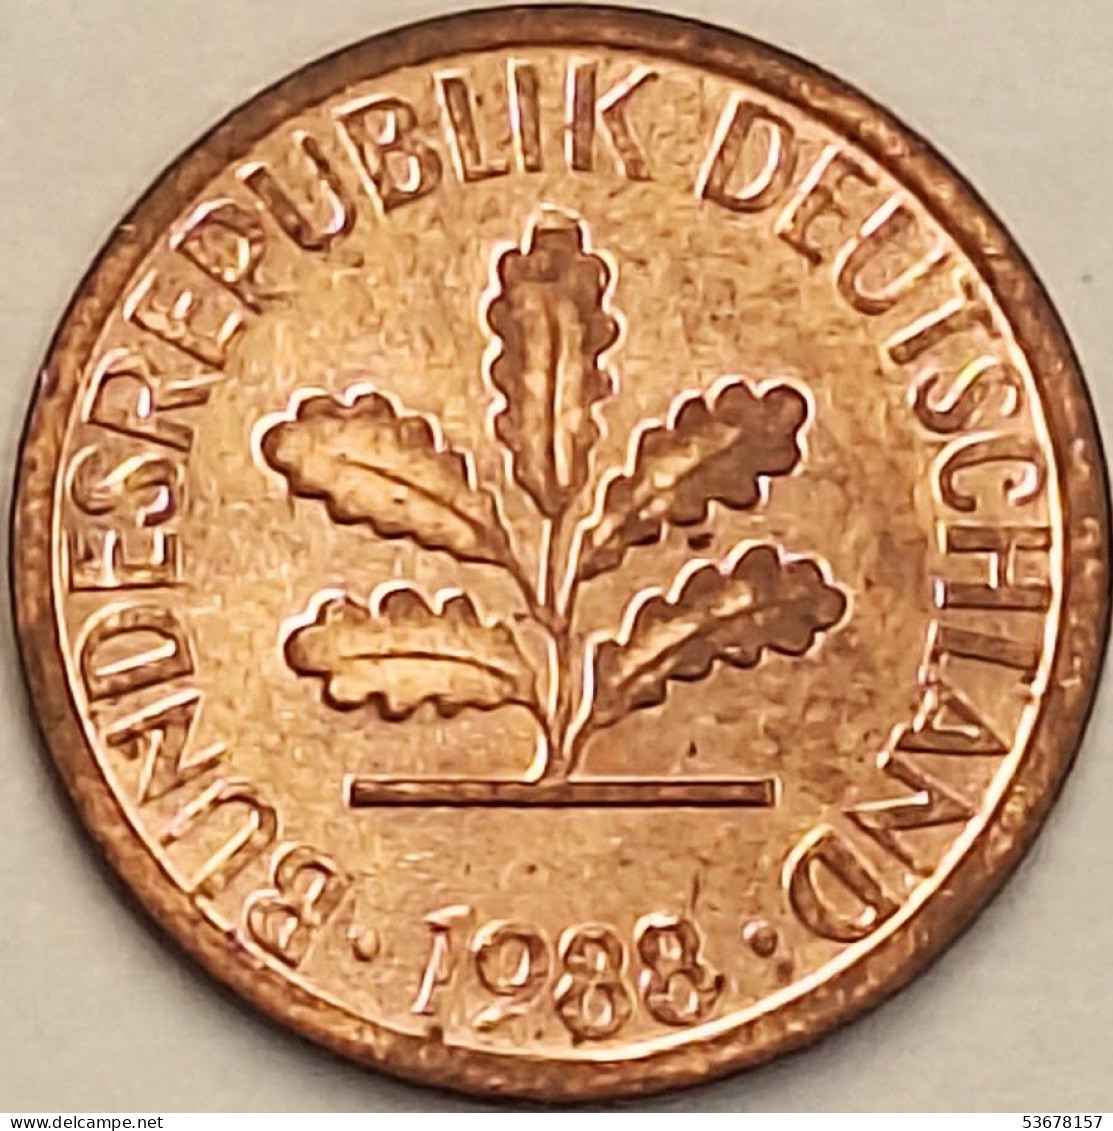 Germany Federal Republic - Pfennig 1988 D, KM# 105 (#4502) - 1 Pfennig